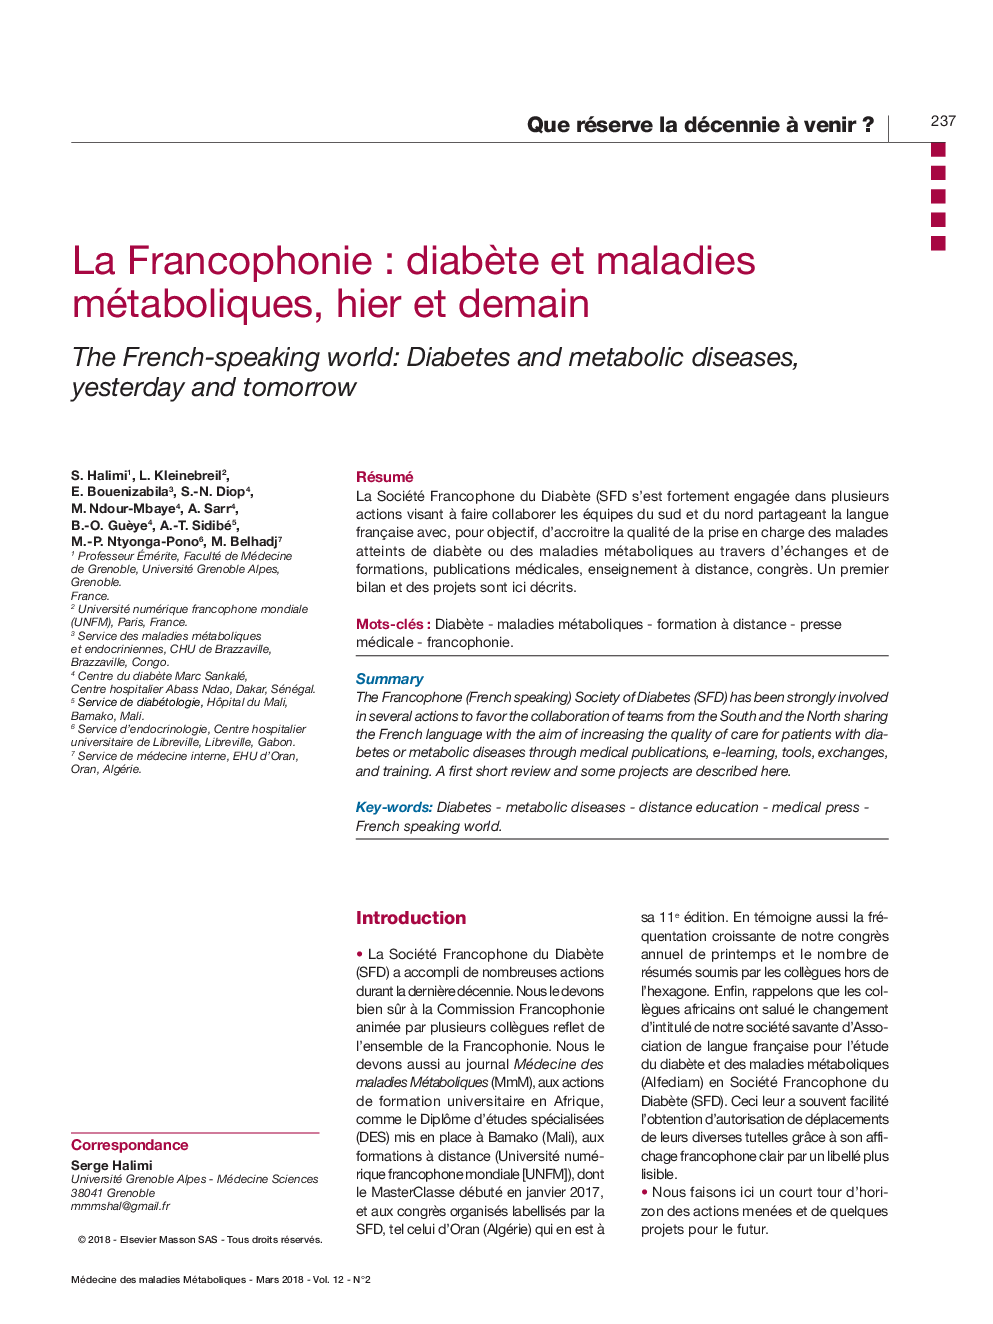 La Francophonie : diabÃ¨te et maladies métaboliques, hier et demain